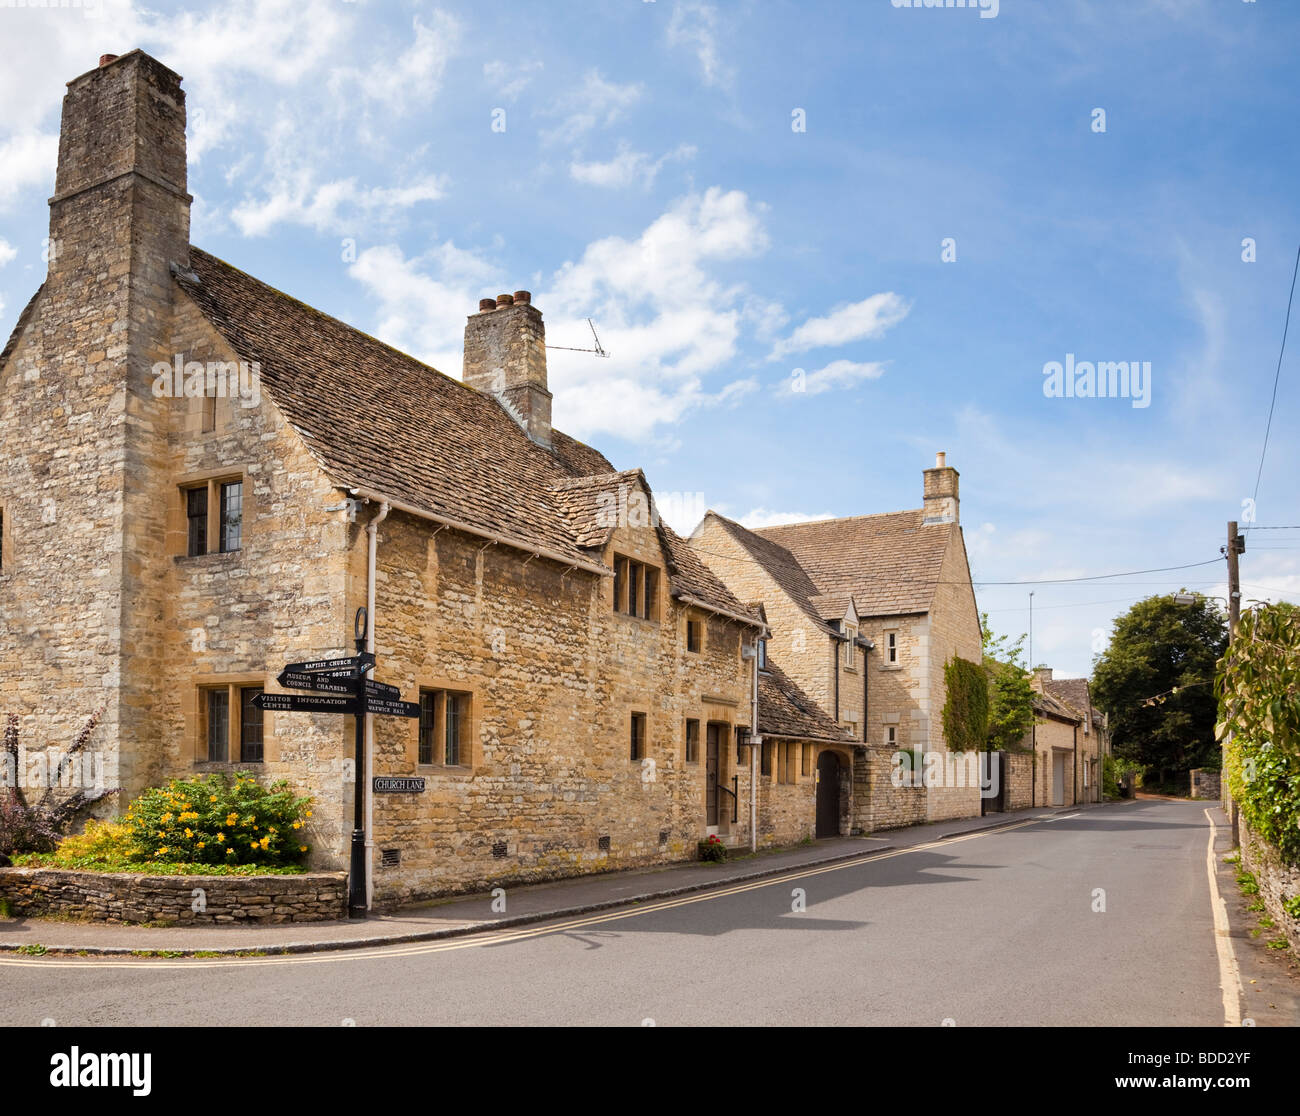 Petite rue dans les Cotswolds ville de Burford, Oxfordshire, England, UK avec de belles vieilles maisons en pierre de Cotswold Banque D'Images